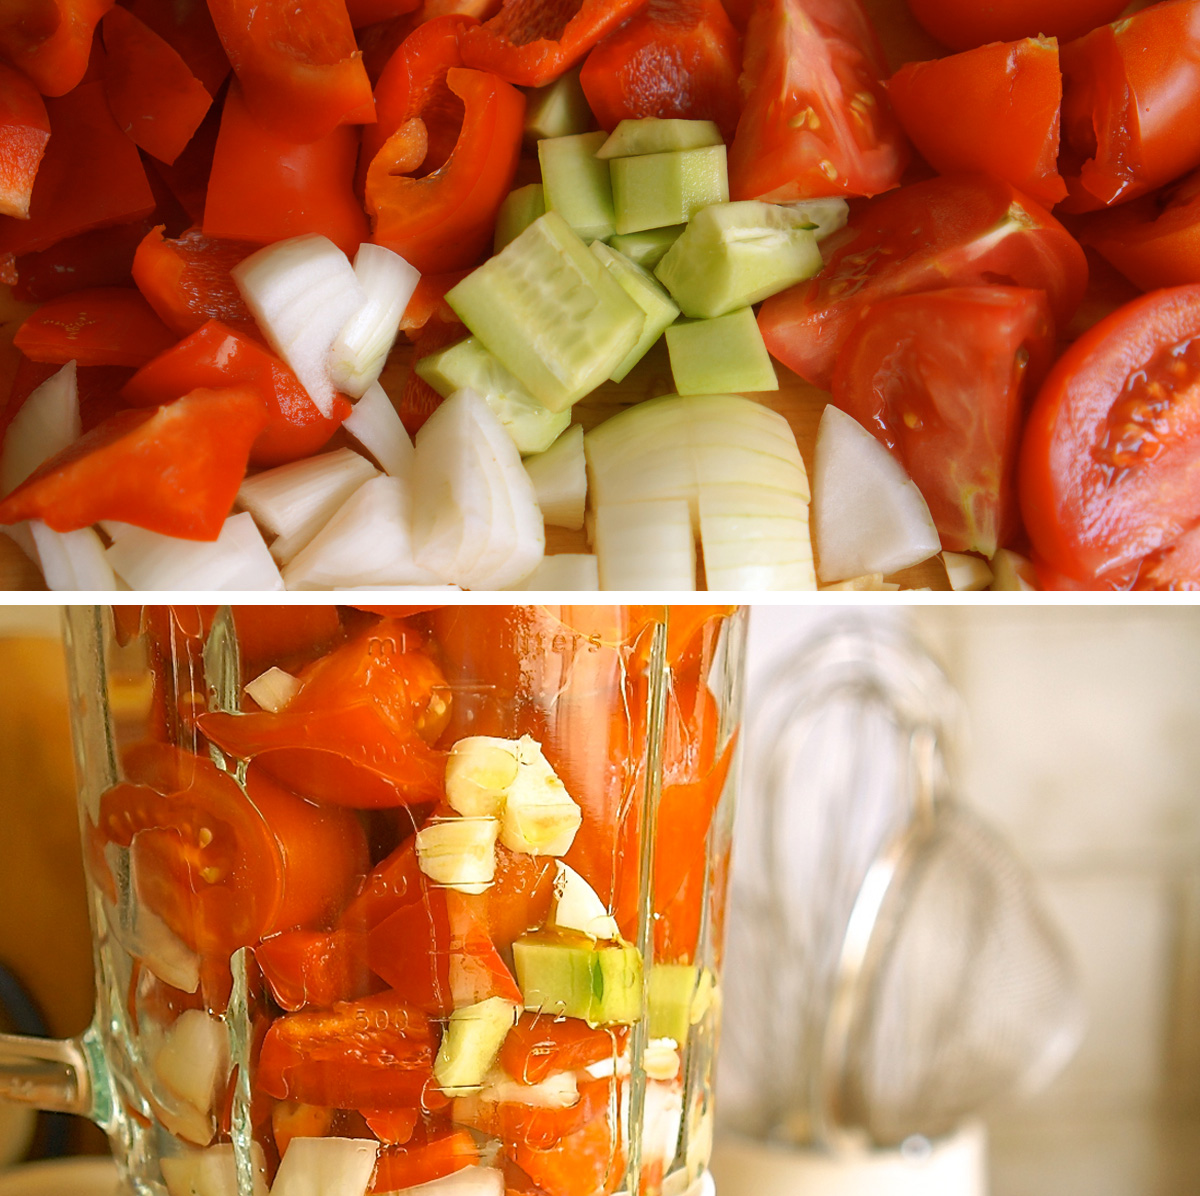 גספצ'ו, מרק עגבניות קר - גבישס, בלוג האוכל של מירב גביש